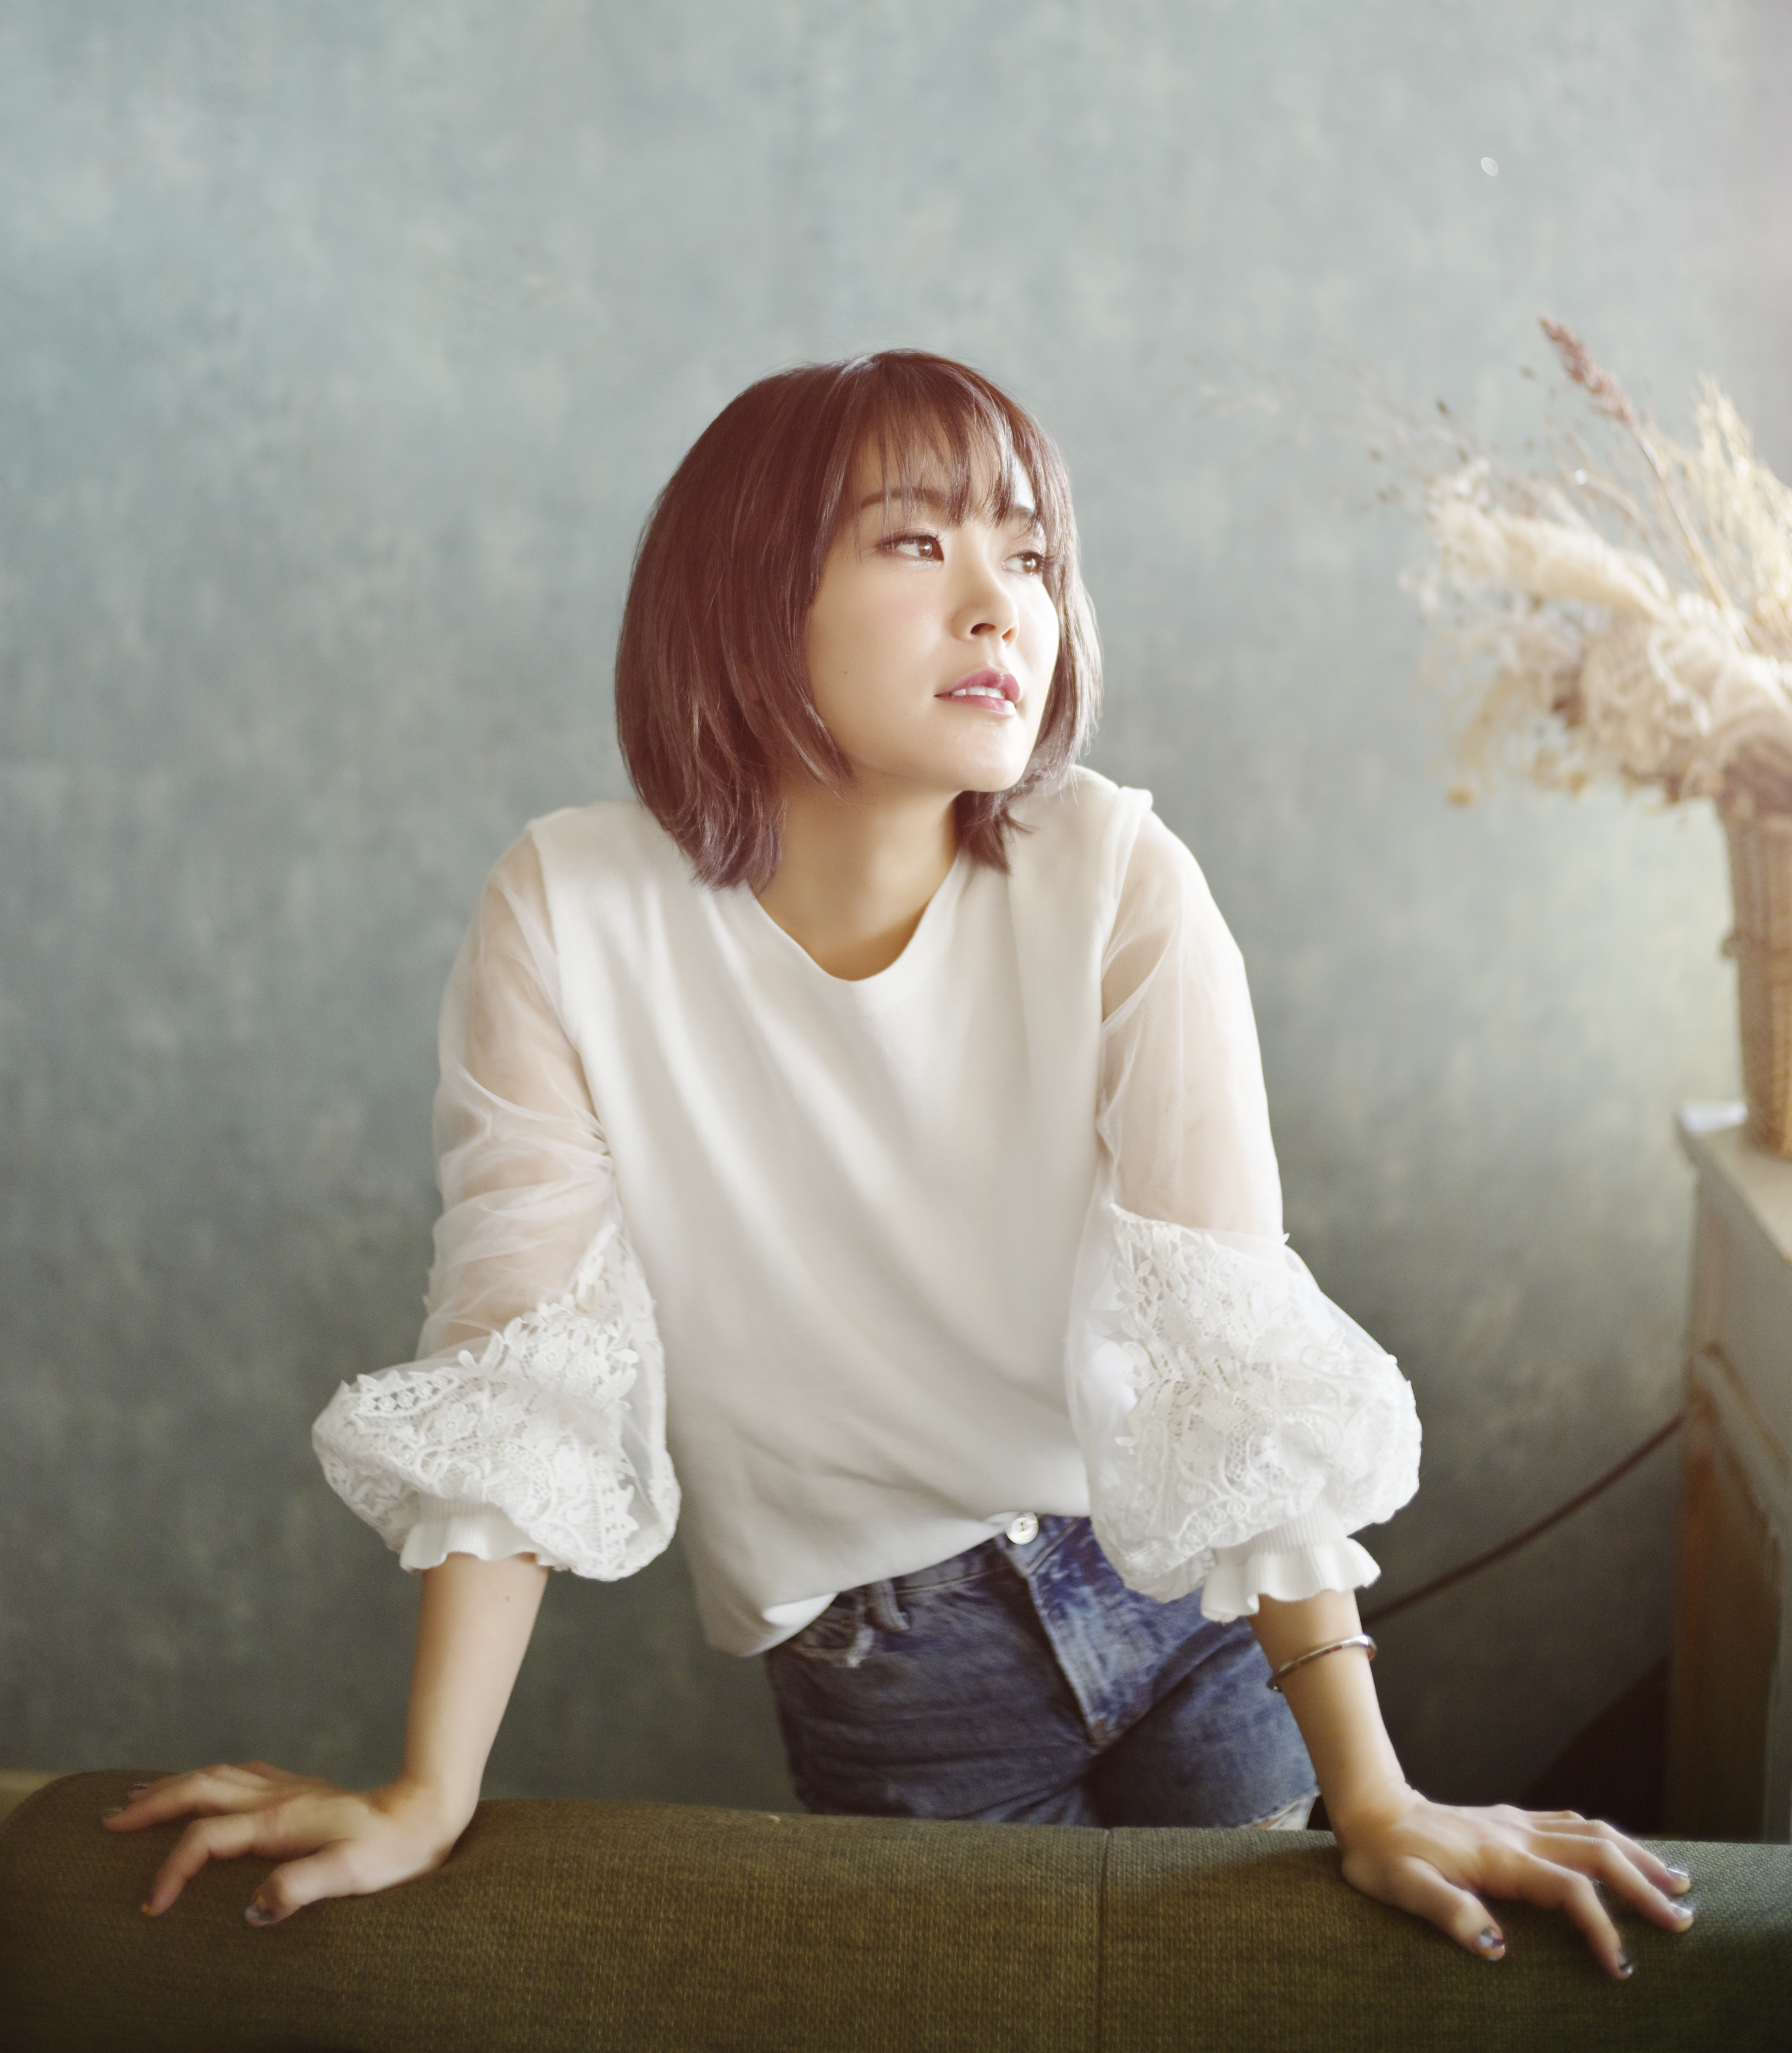 森恵のニューカヴァーアルバムに矢井田瞳がコーラスとして参加、俳優・山田裕貴からコメントも到着